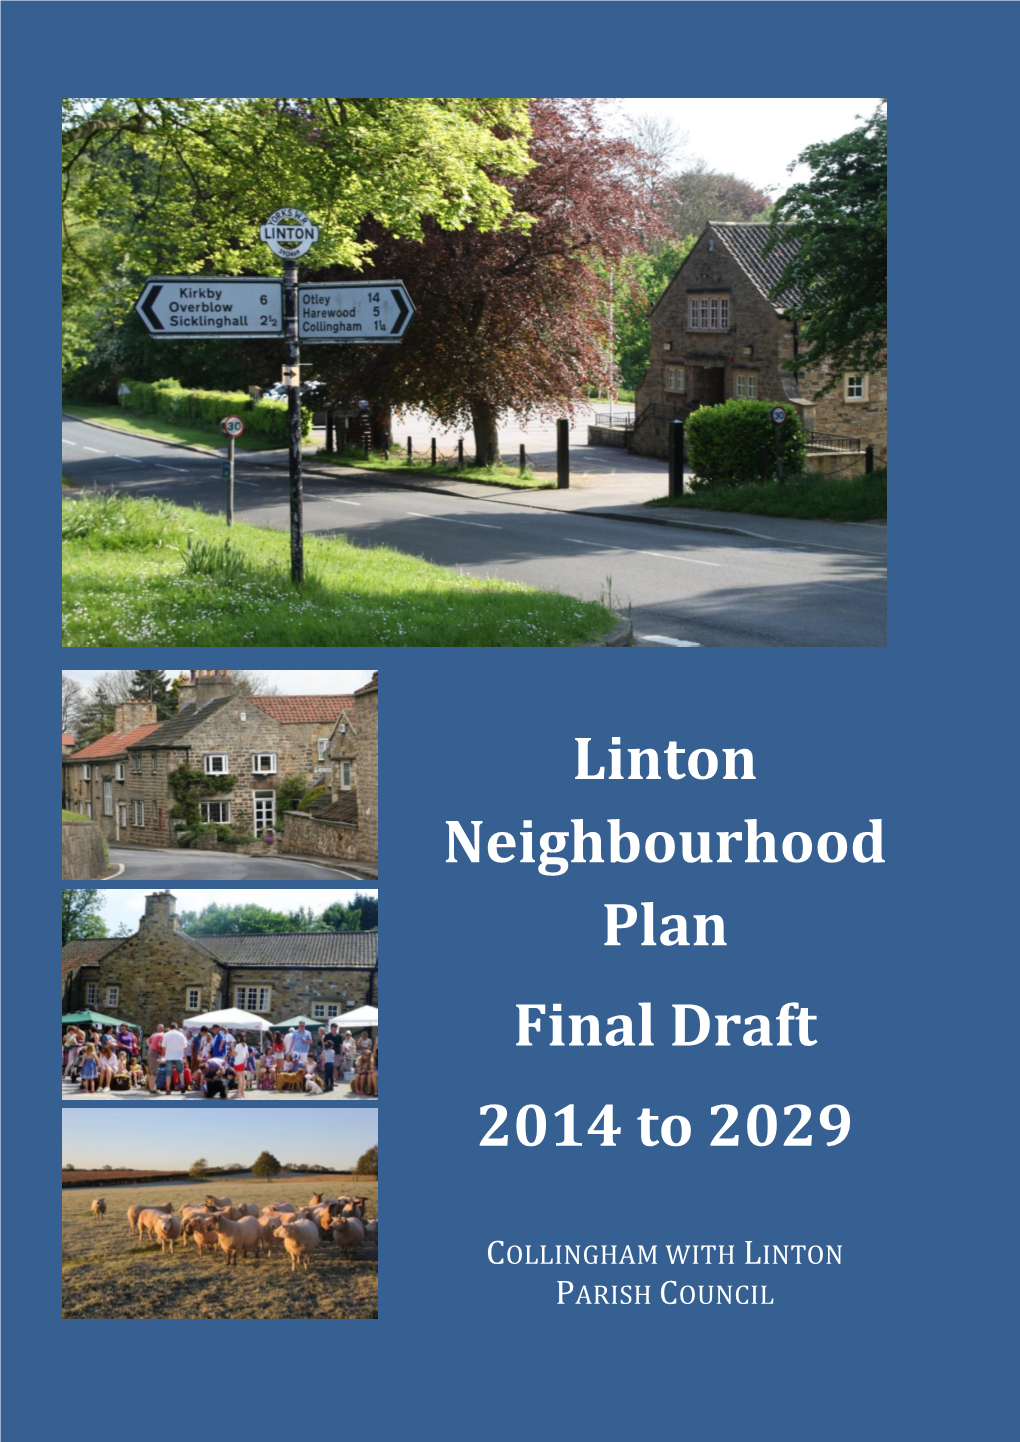 Linton Neighbourhood Plan Final Draft 2014 to 2029